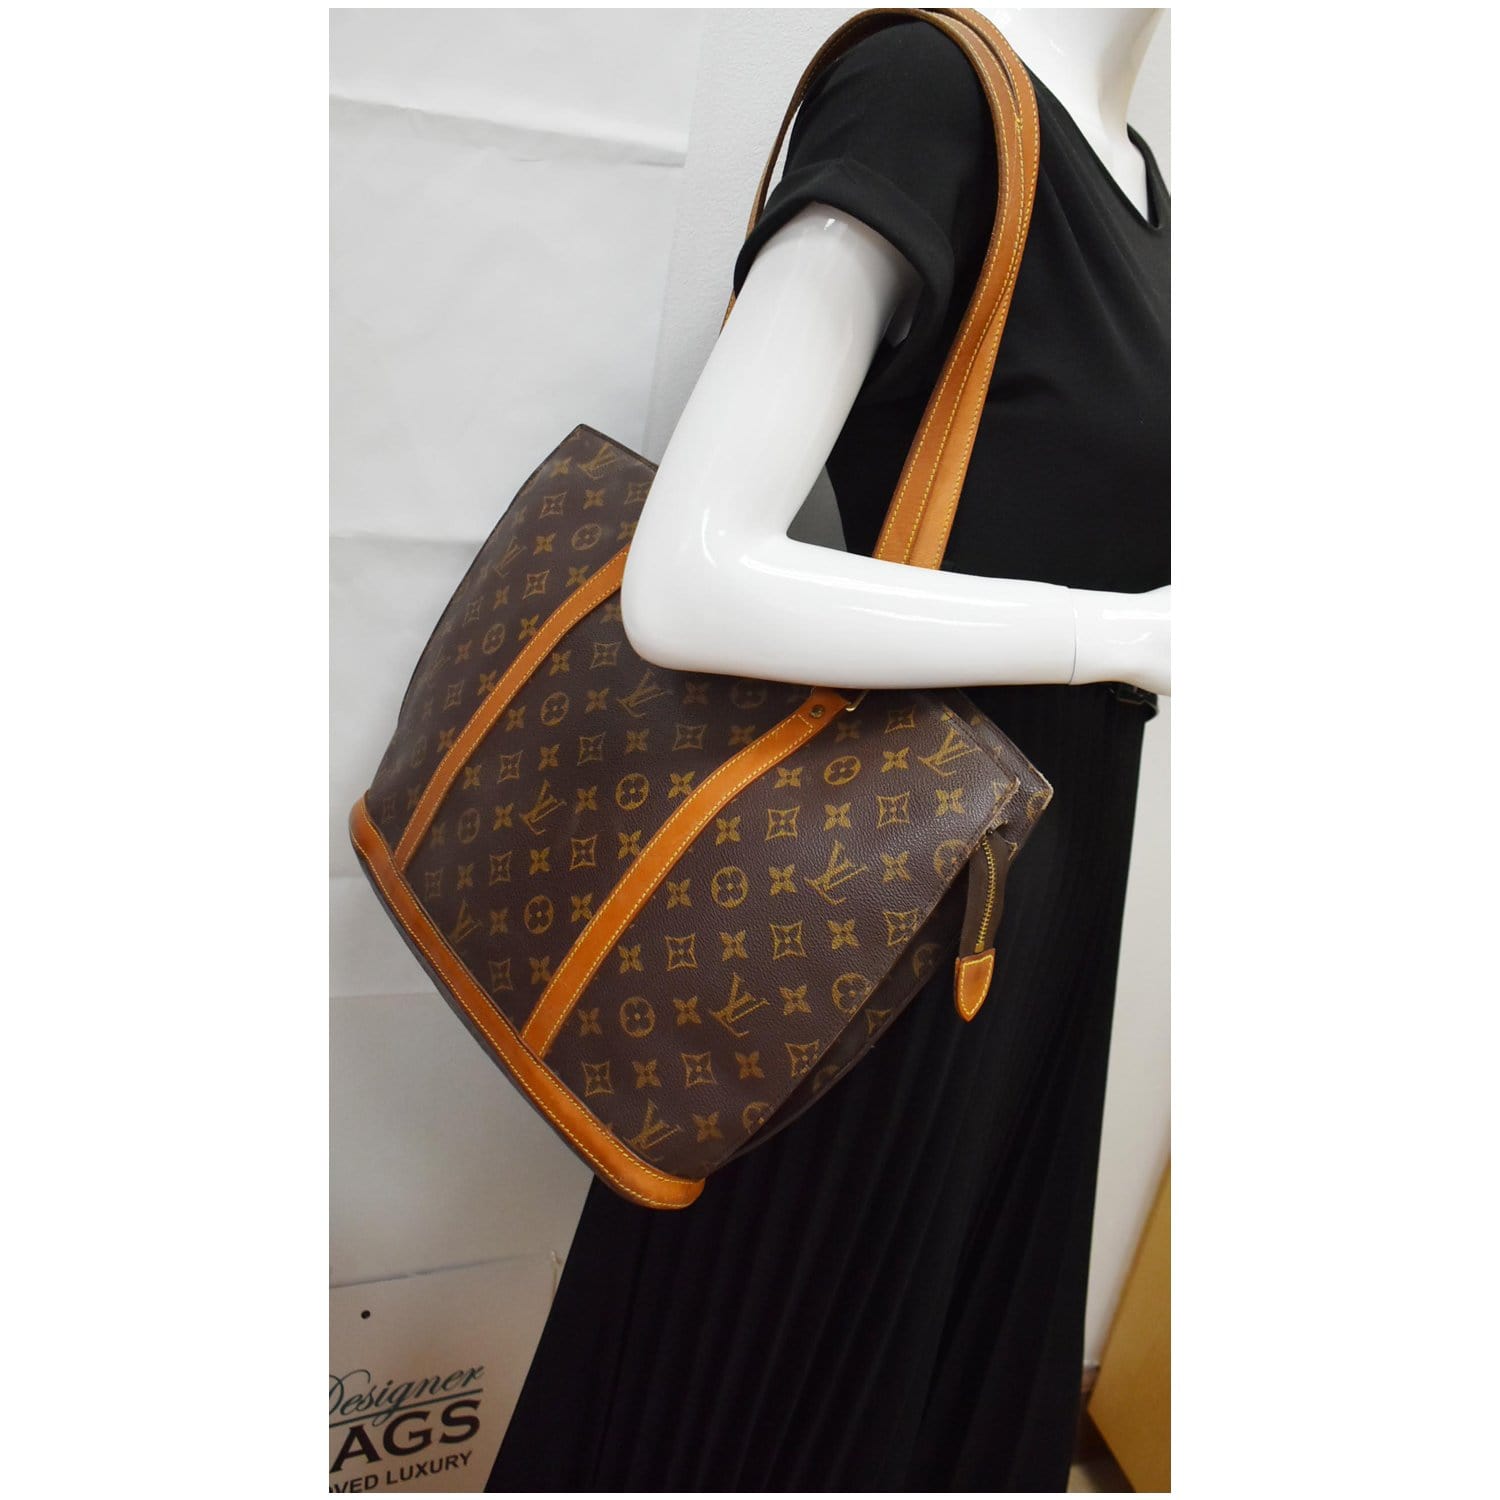 100% authenticity Guaranteed | Louis Vuitton Monogram Shoulder Bag